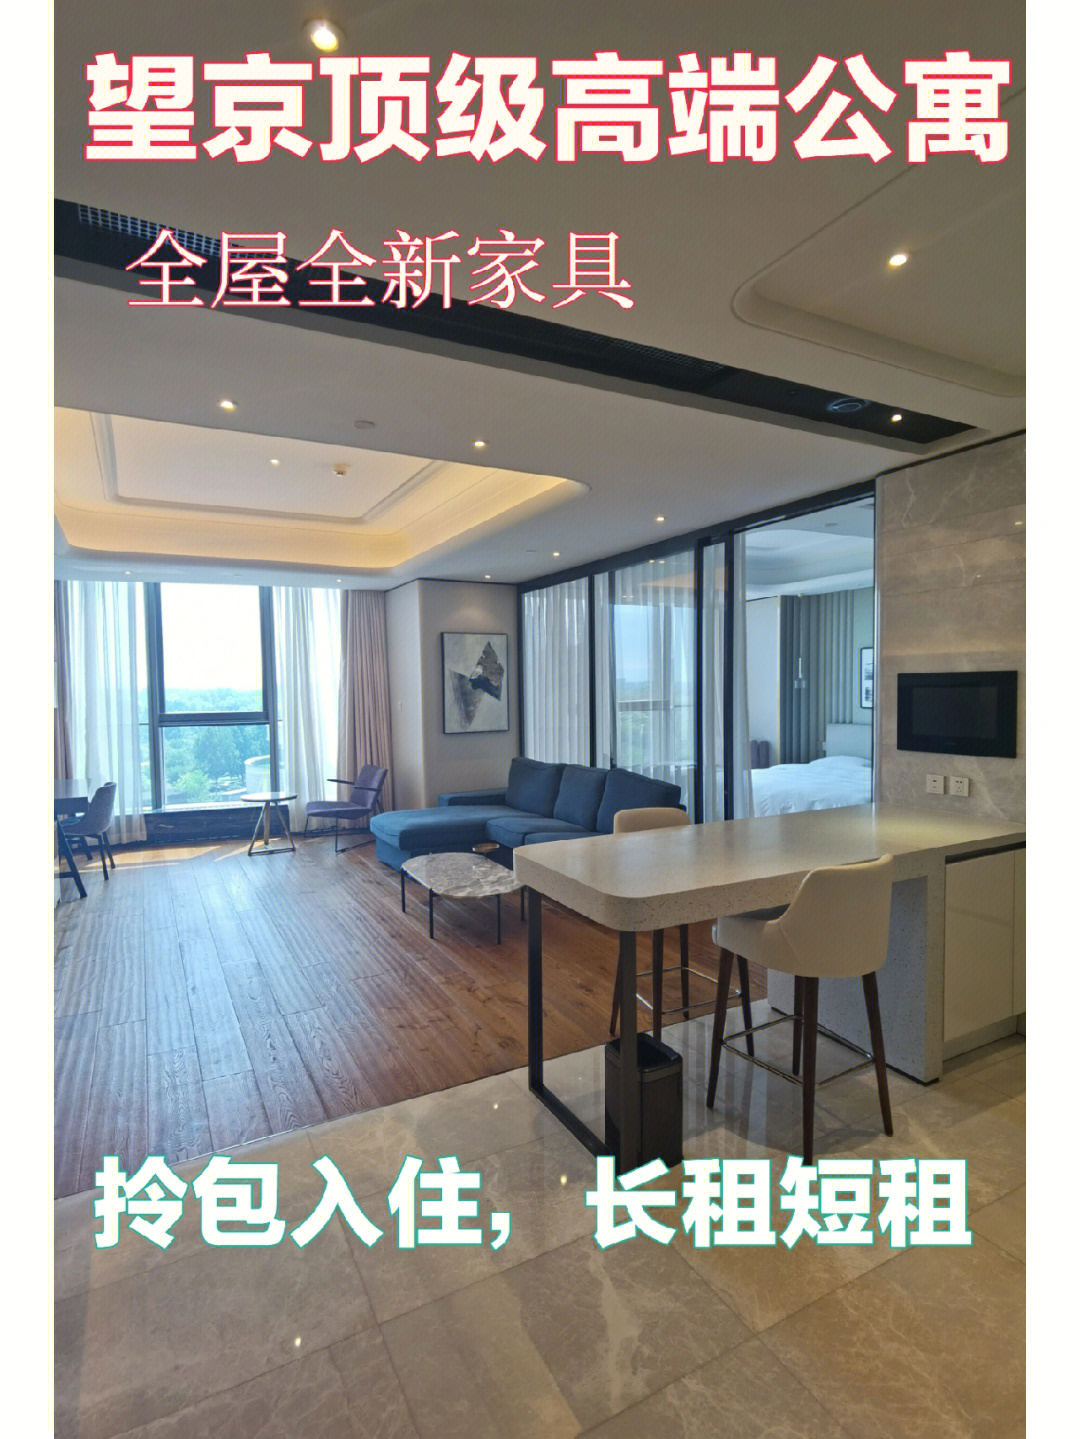 北京昆泰嘉瑞公寓图片